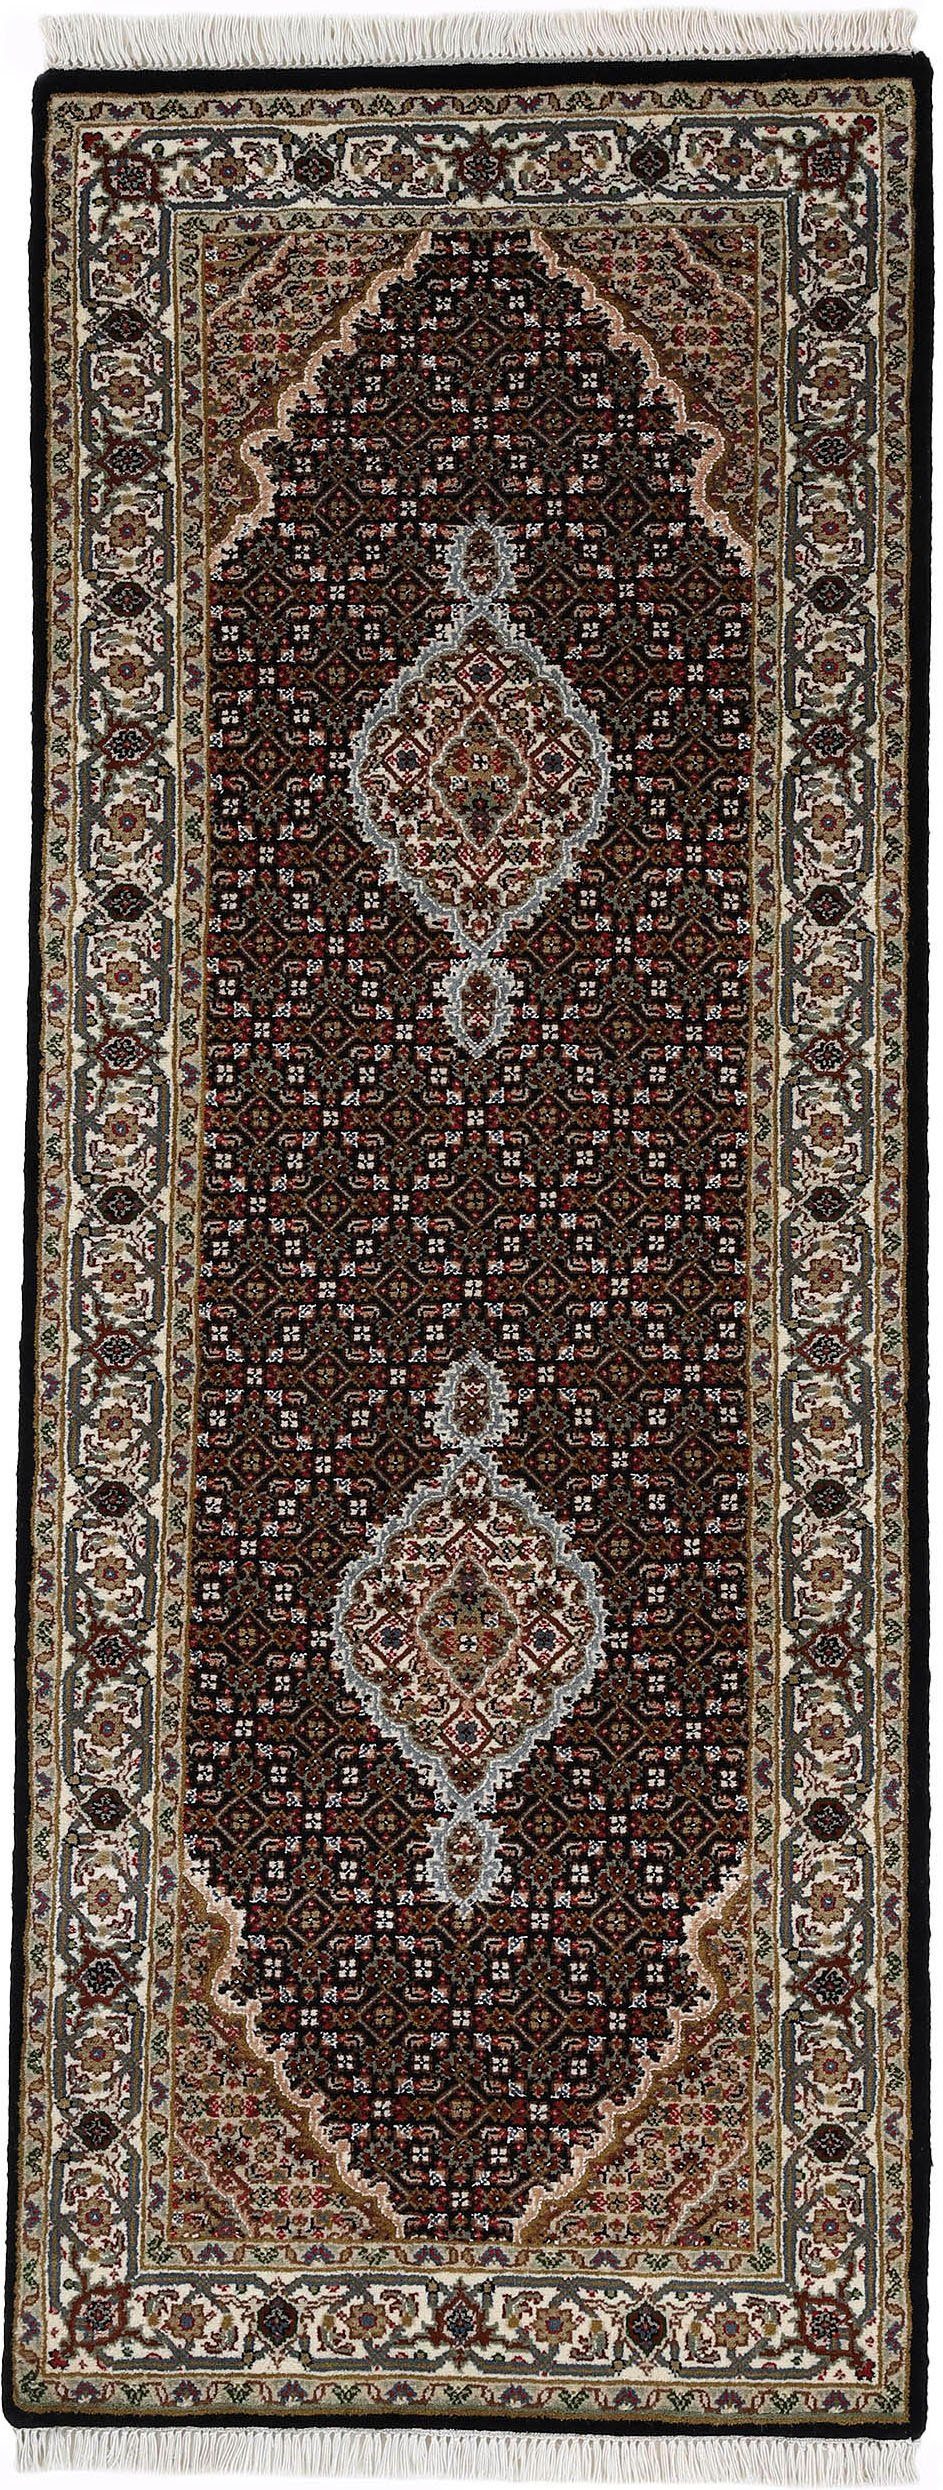 woven arts loper oosters tapijt tabriz mahi met de hand geknoopt, woonkamer, zuivere wol voor een warme omgevingsklimaat zwart